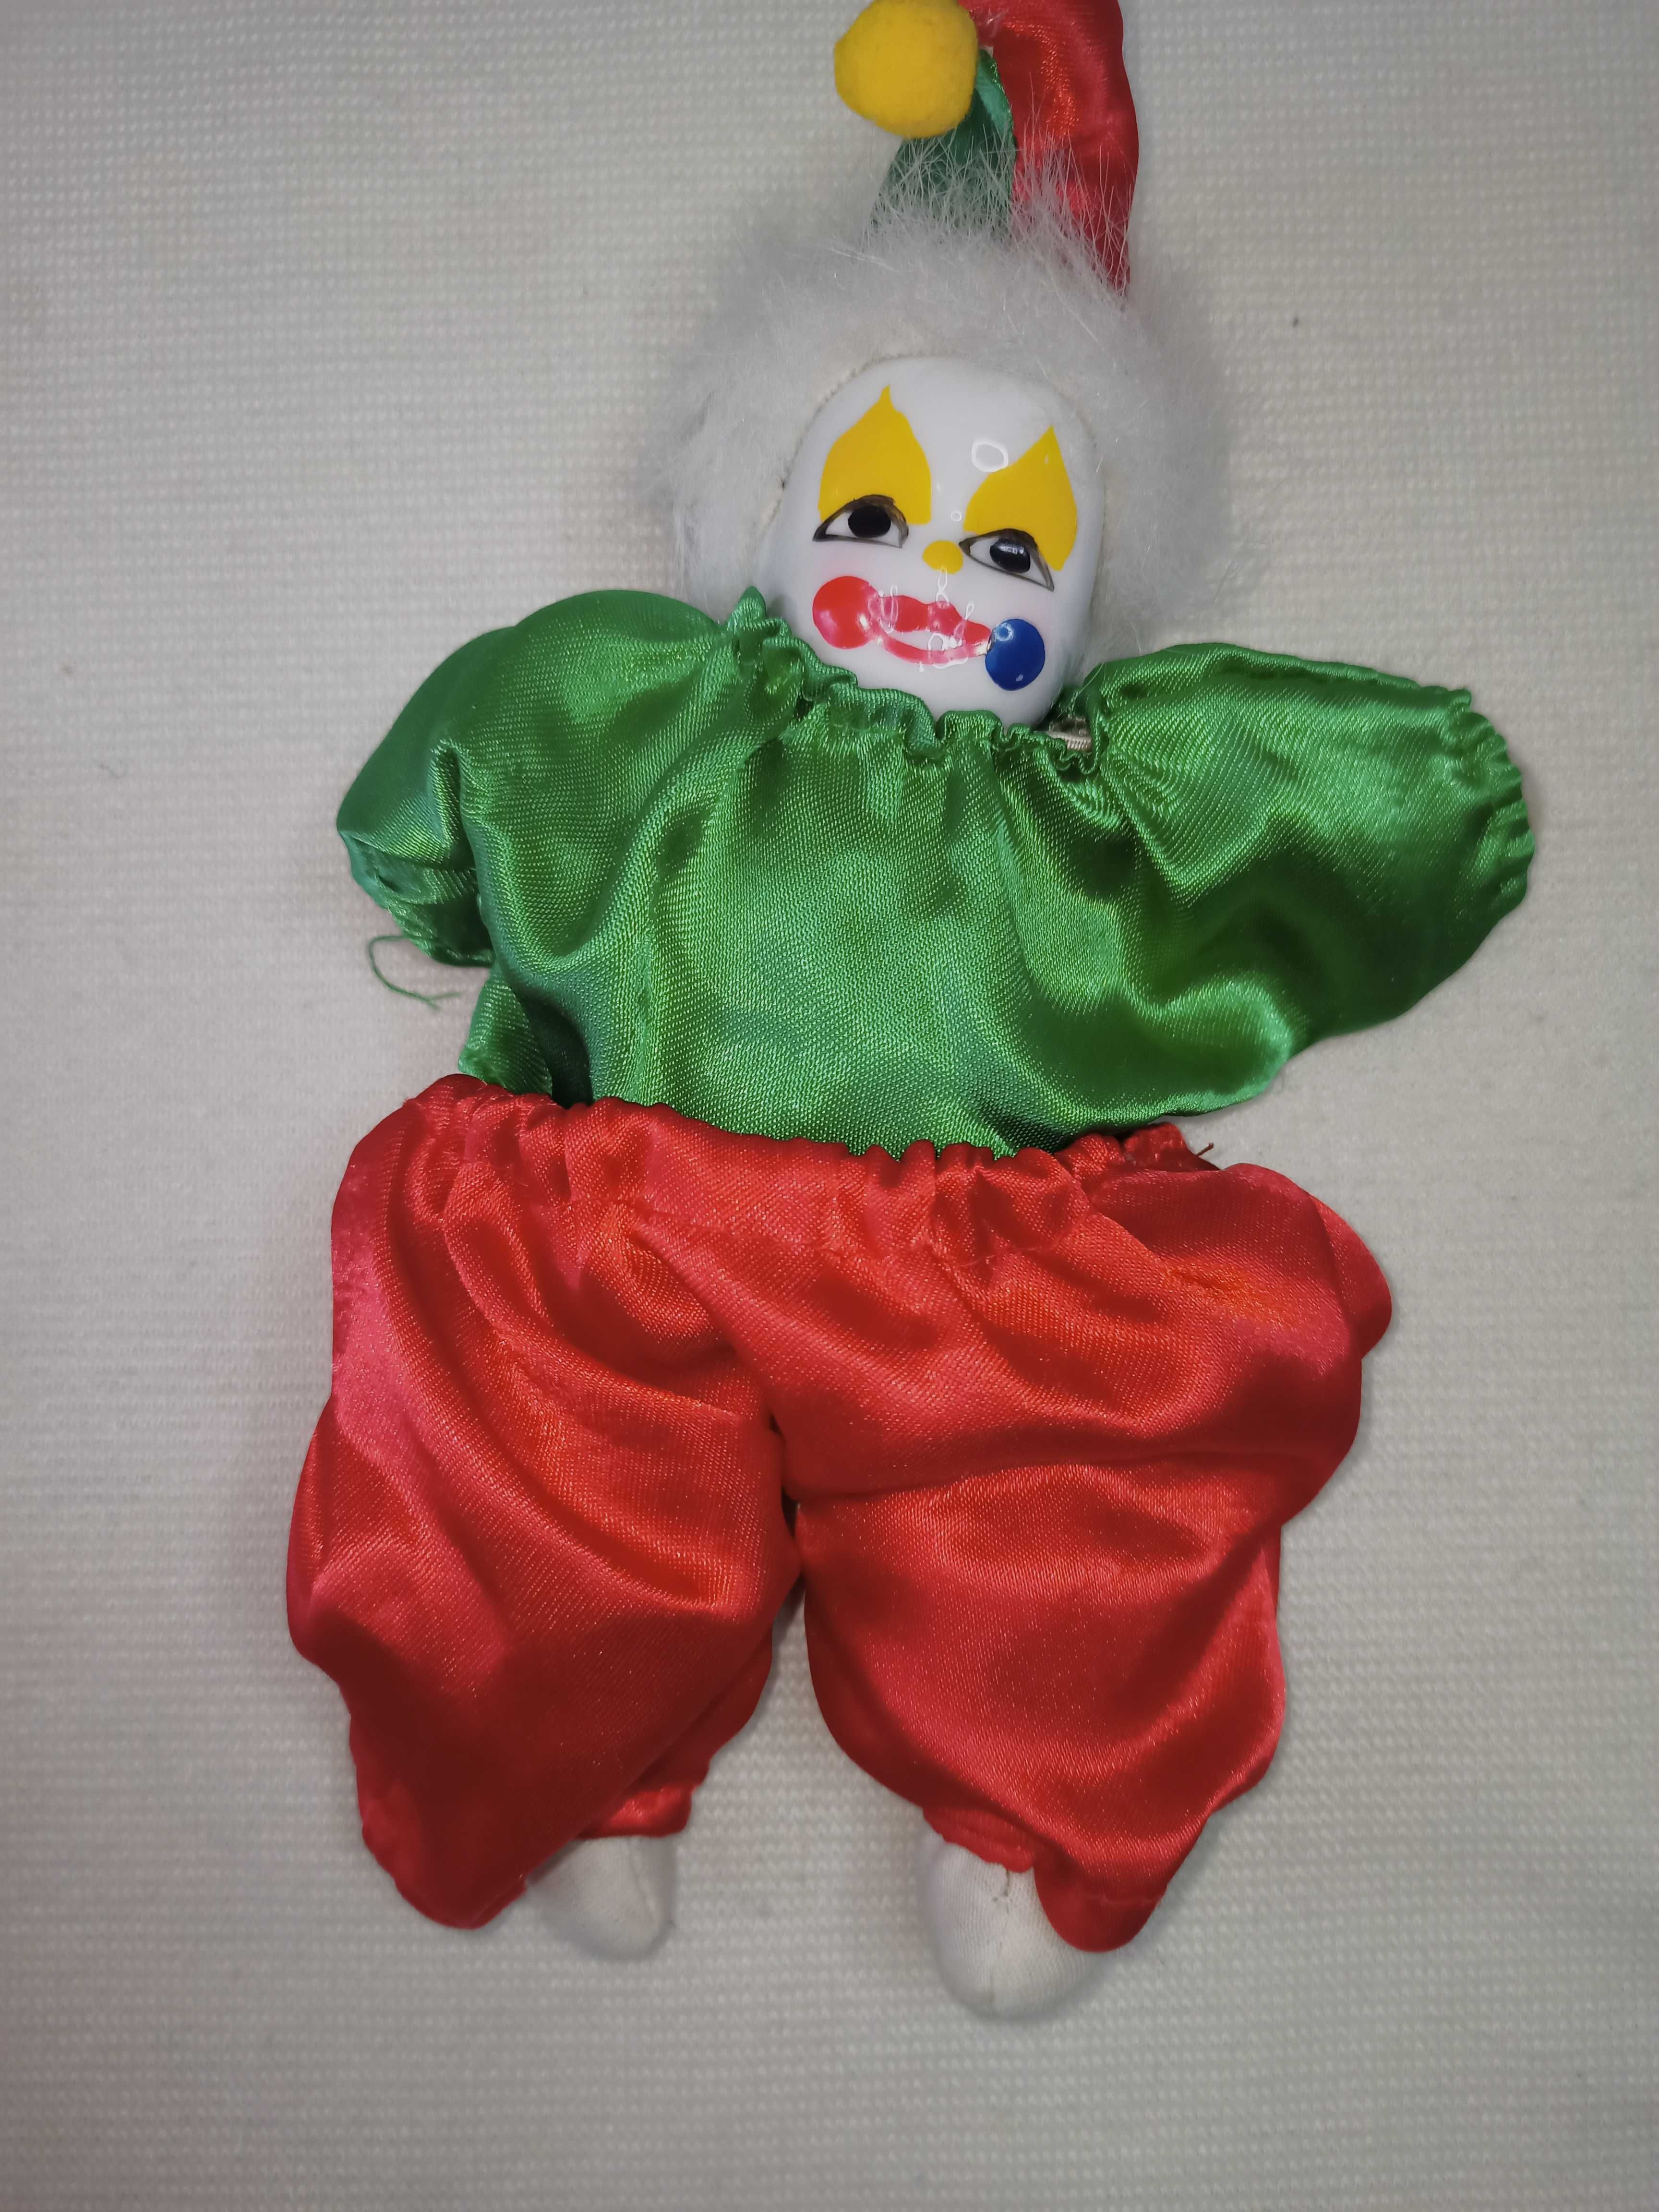 Коллекционная кукла Арлекин.
Статуэтка Клоун. Сувенирная игрушка